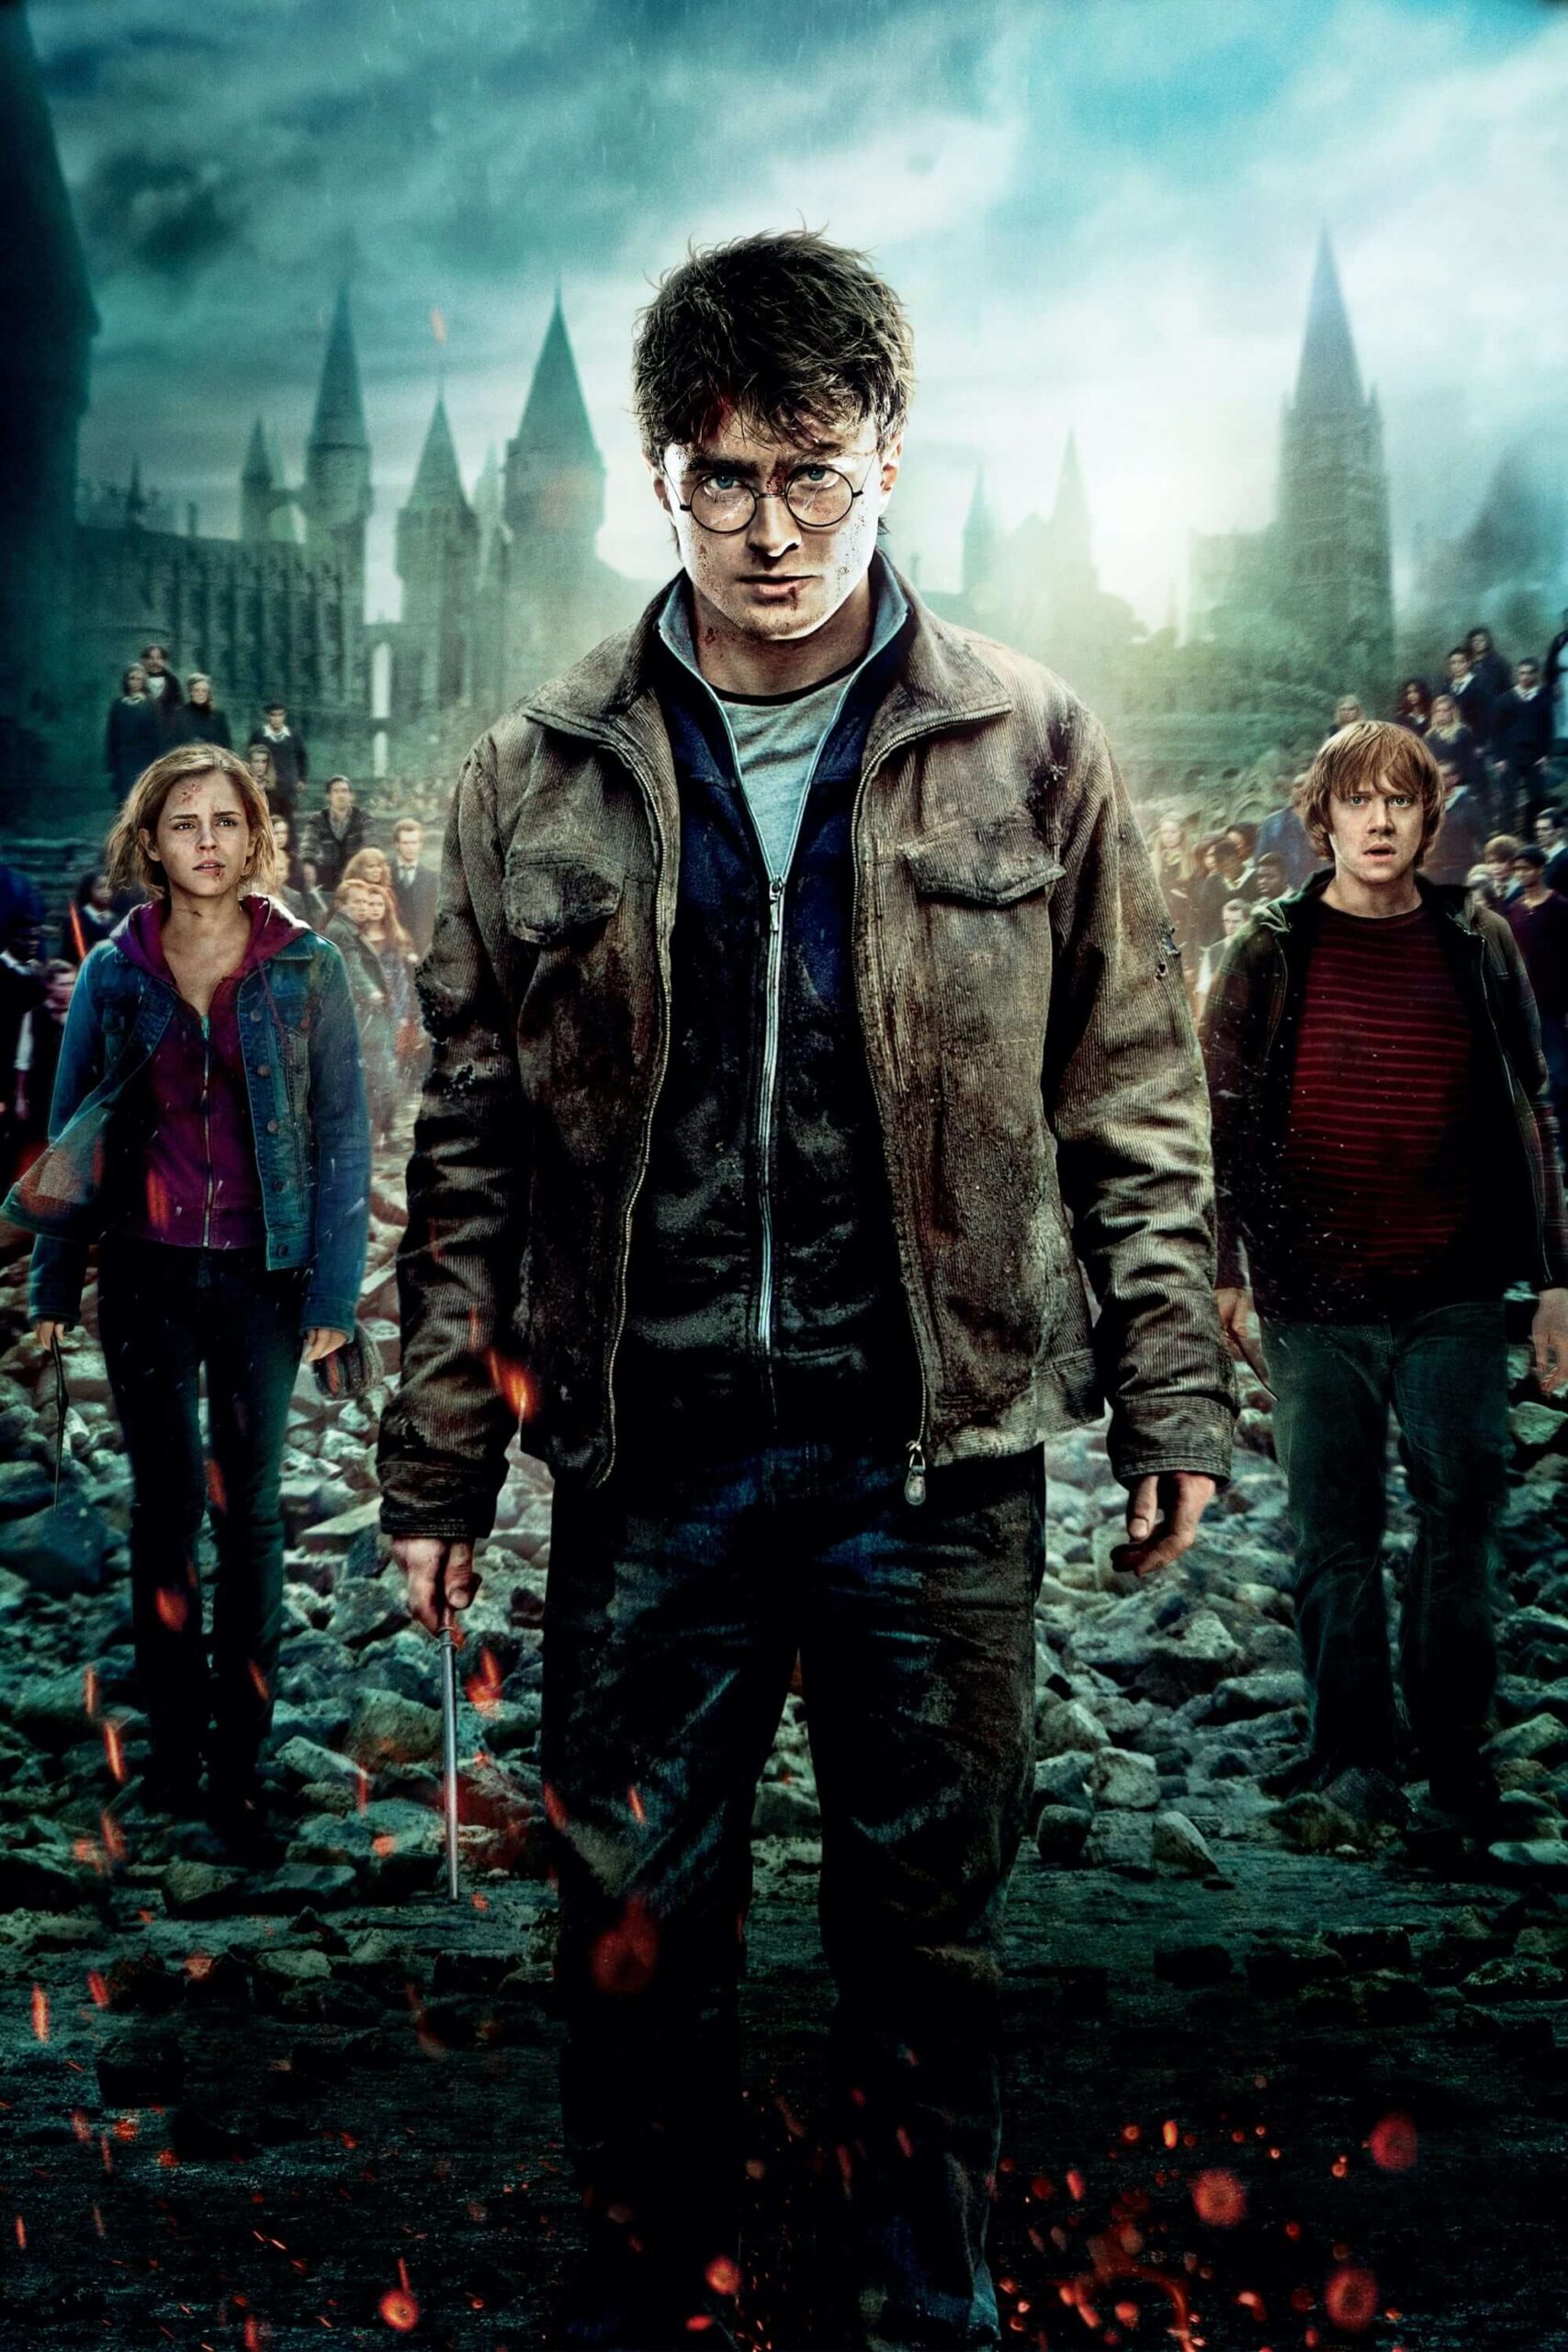 هری پاتر و یادگاران مرگ – قسمت دوم (Harry Potter and the Deathly Hallows – Part 2)